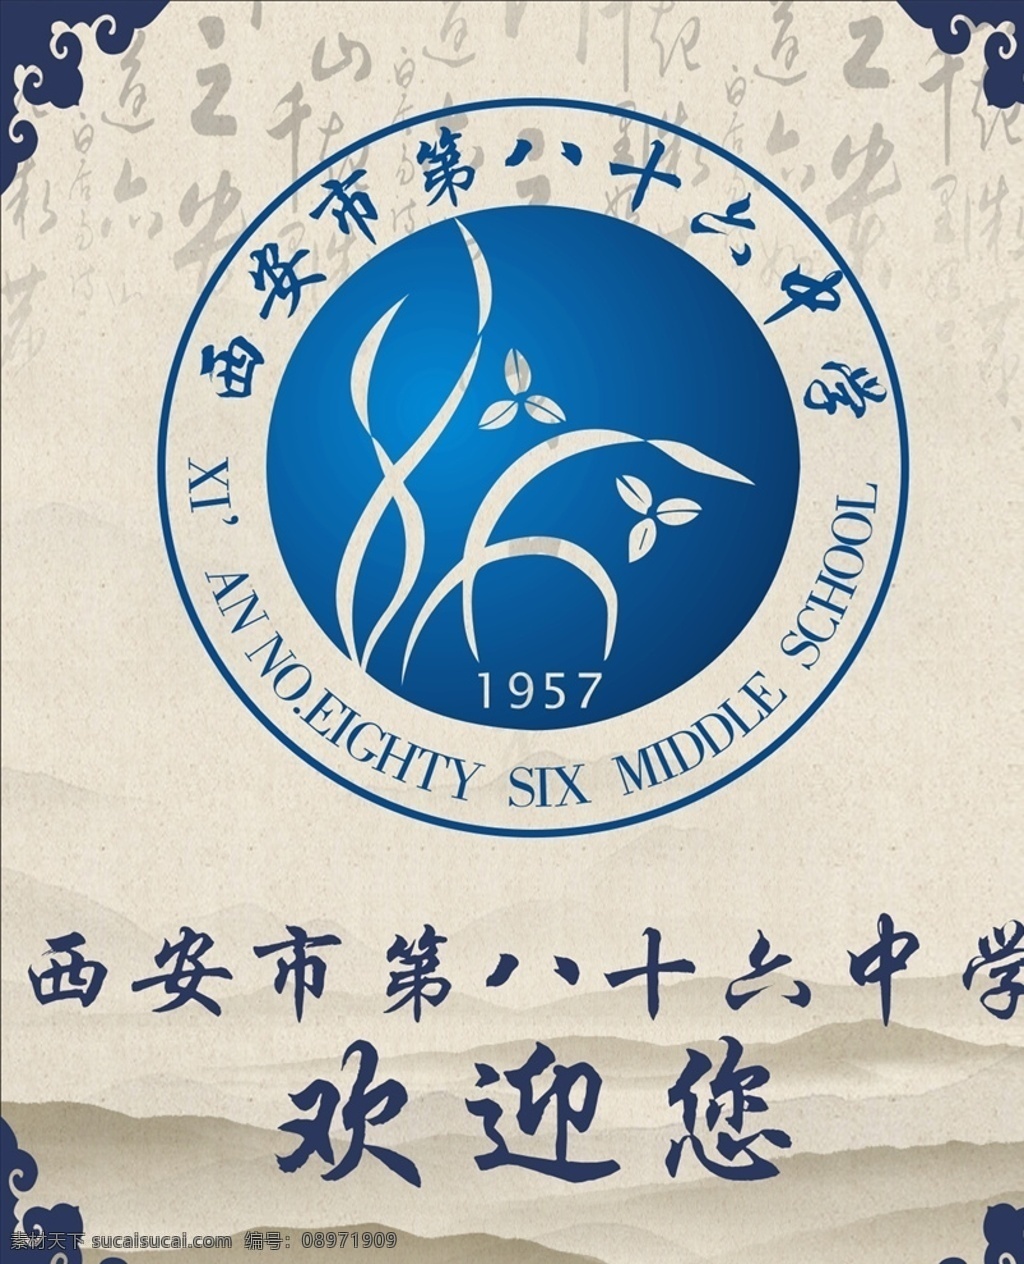 西安市 六 十八中 校徽 第六十八中 标志 logo 中国风背景 logo大全 logo设计